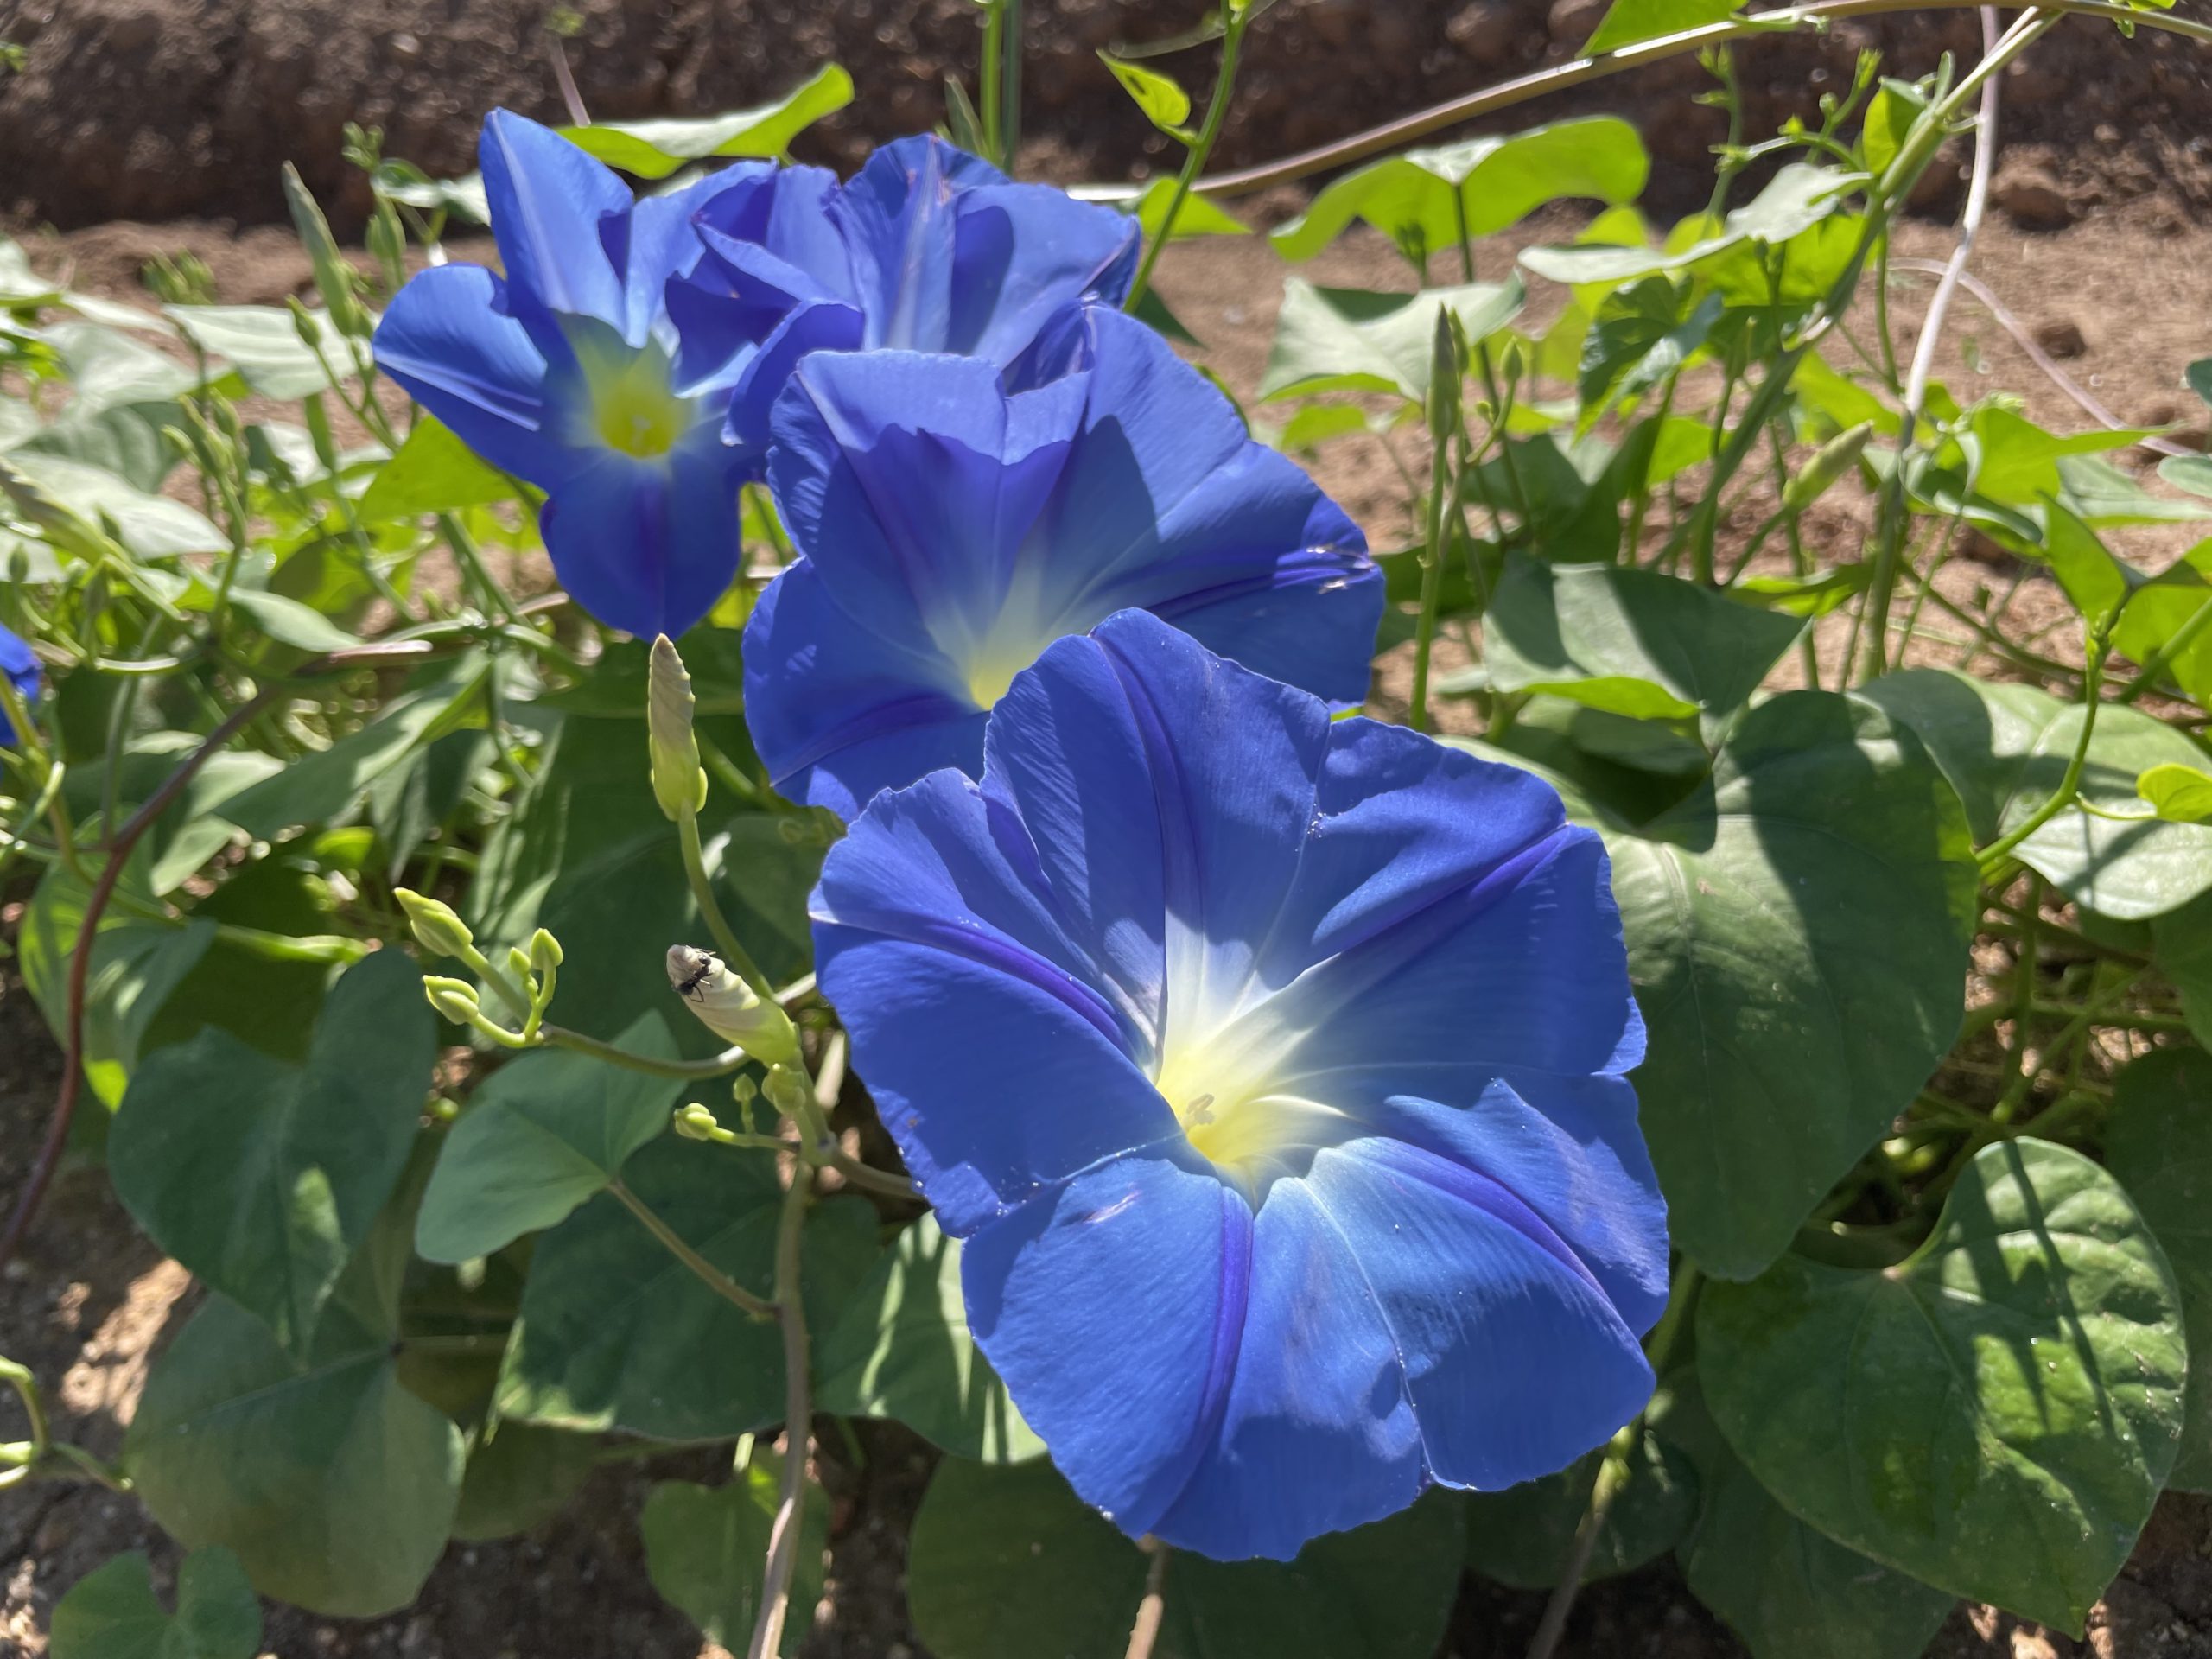 【2023年 8月5日(Saturday)Open from 9:00 today】Heavenly Blue【50% flowering】Marigold【Best time for viewing】Kochia【Best time for viewing】